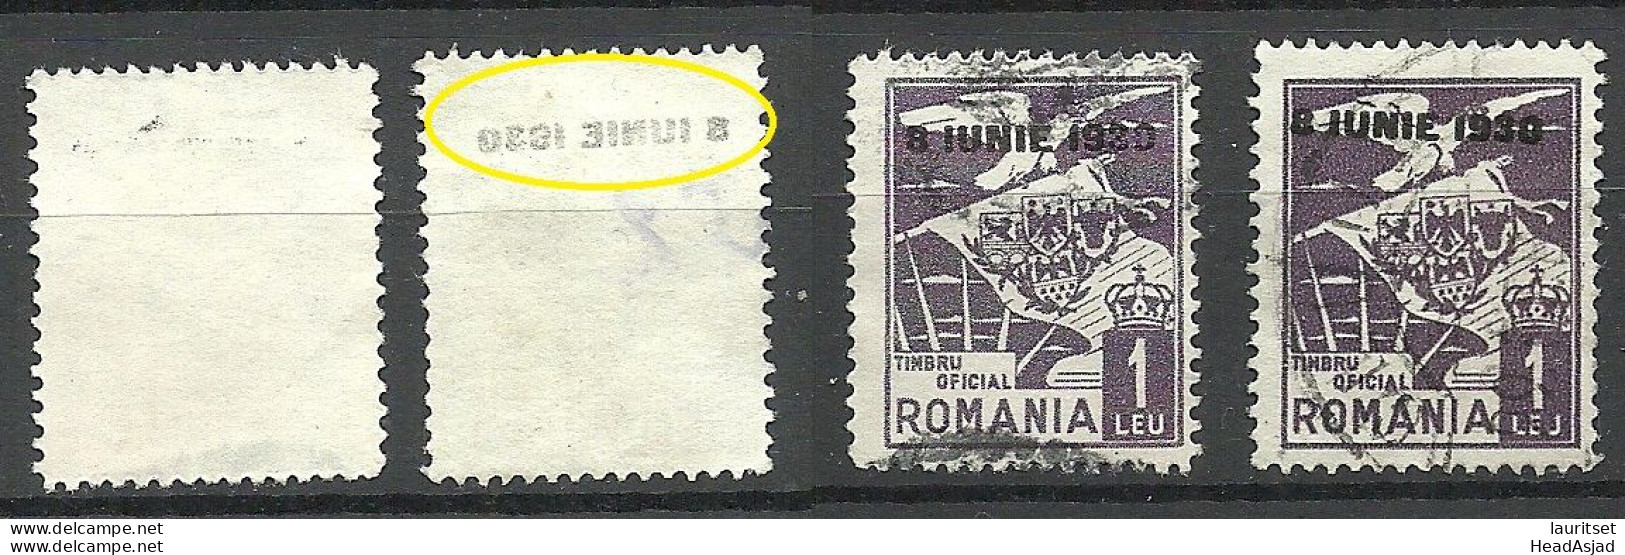 ROMANIA Rumänien 1930 Dienstmarke Normal + Variety Set Off Of OPT Abklatsch D. Aufdruckes - Dienstzegels